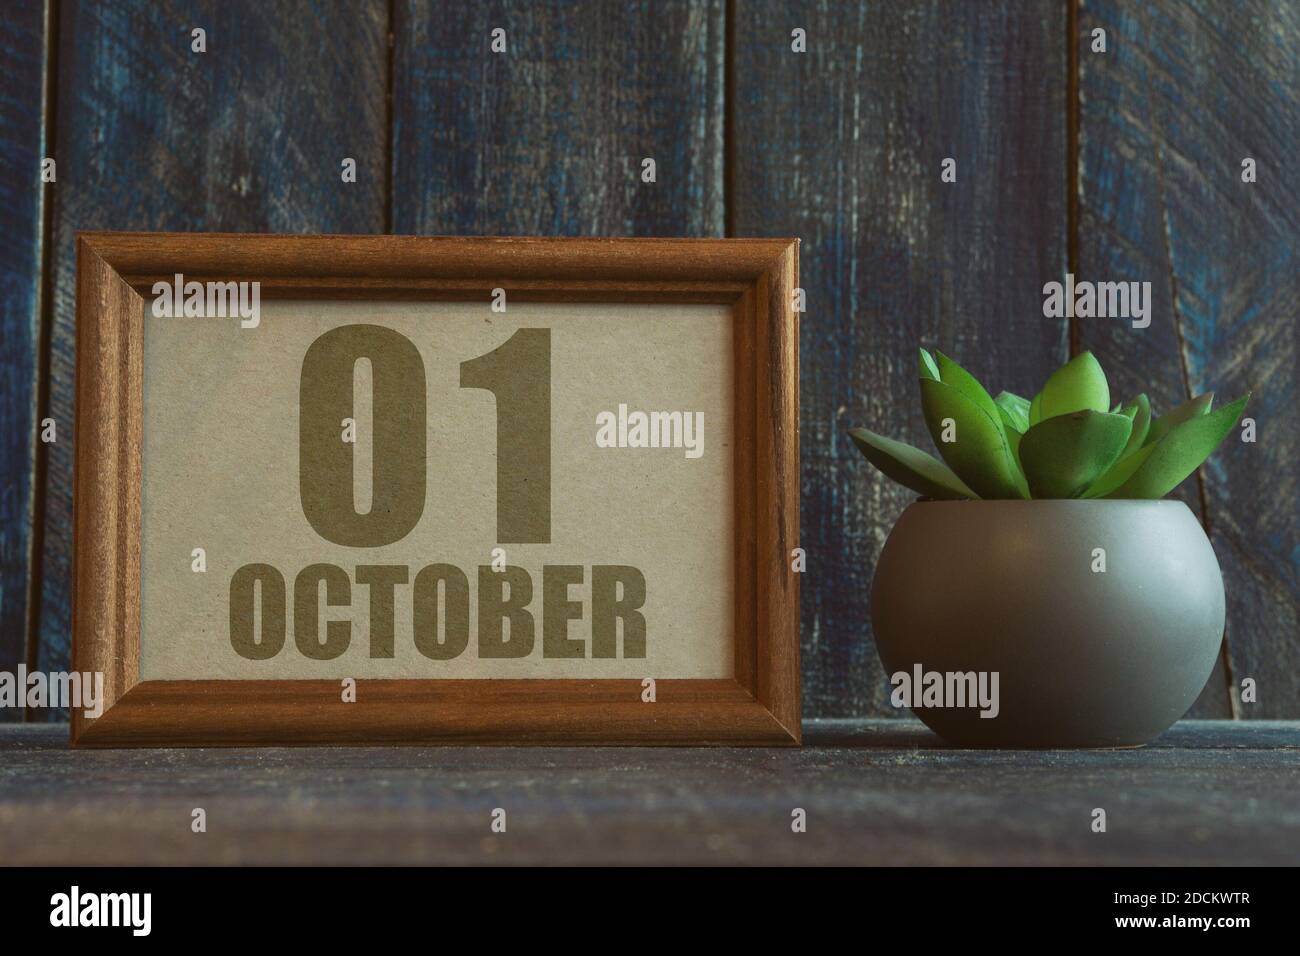 oktober. Tag 1 des Monats, Datum im Rahmen neben Sukkulente auf Holzhintergrund Herbstmonat, Tag des Jahres Konzept Stockfoto